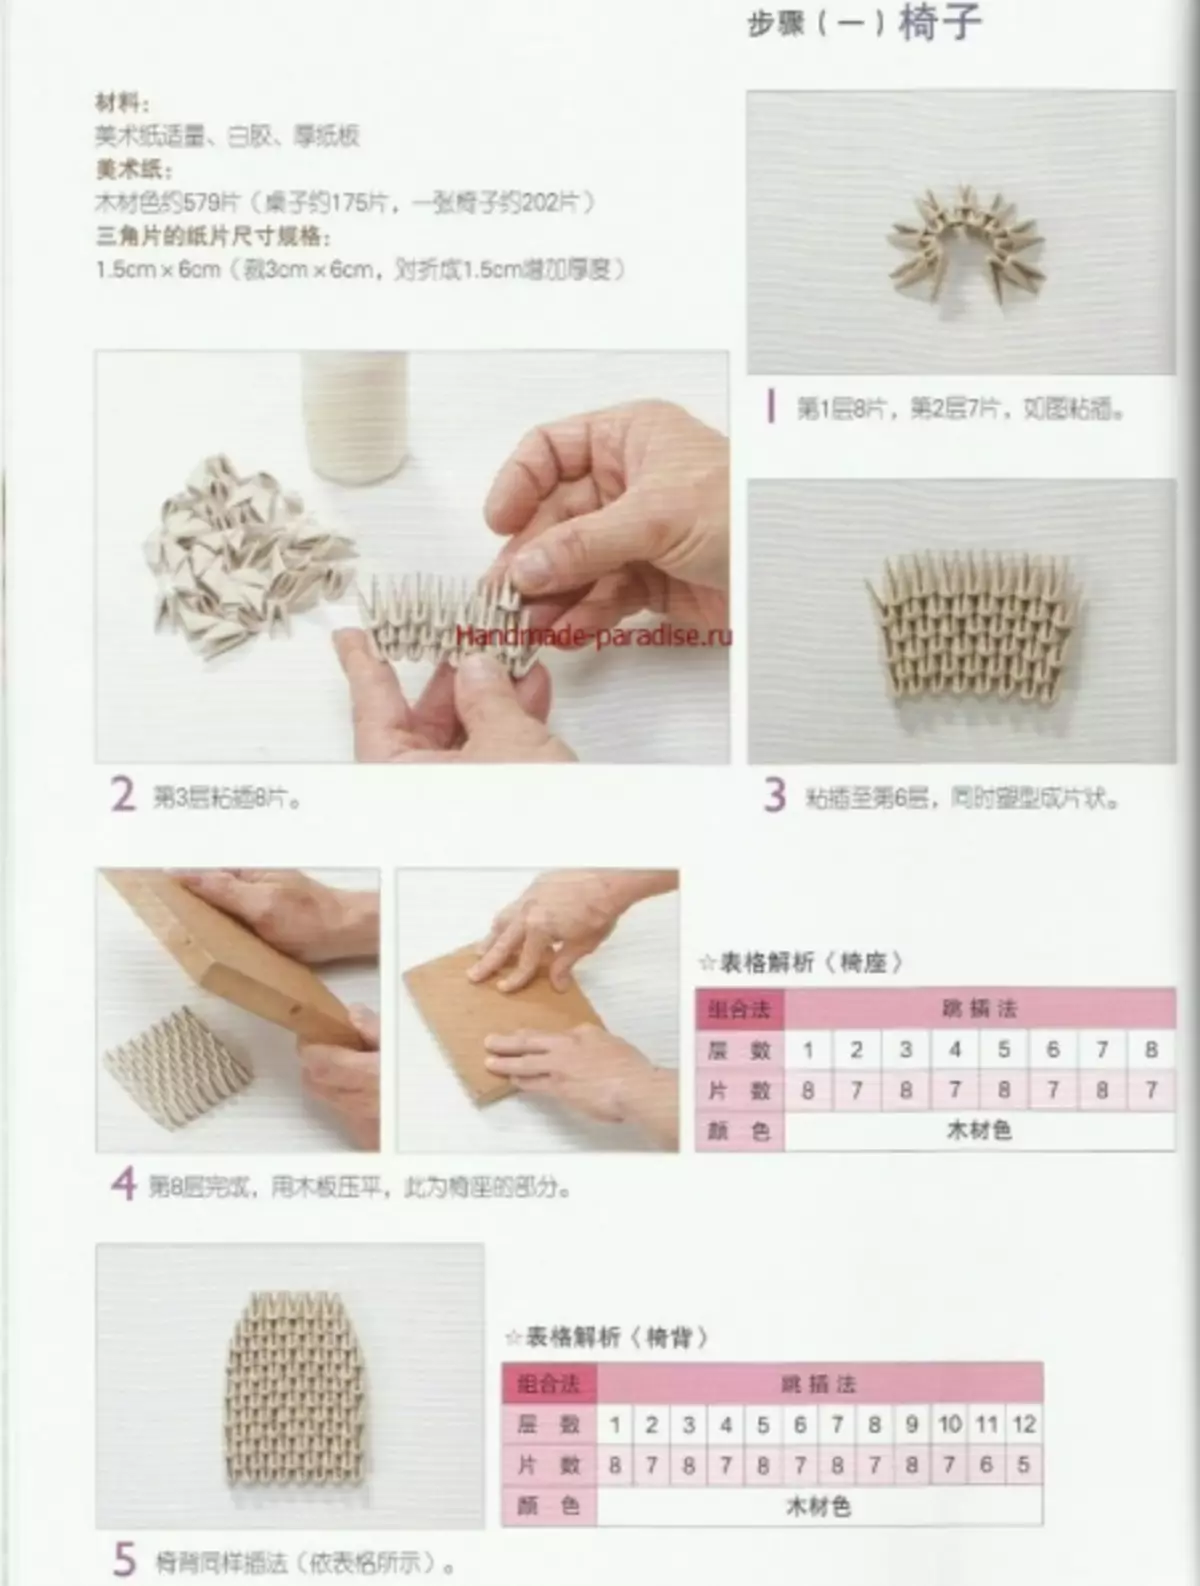 Modular origami. Joornaalka Japan ee leh Fasalada Master